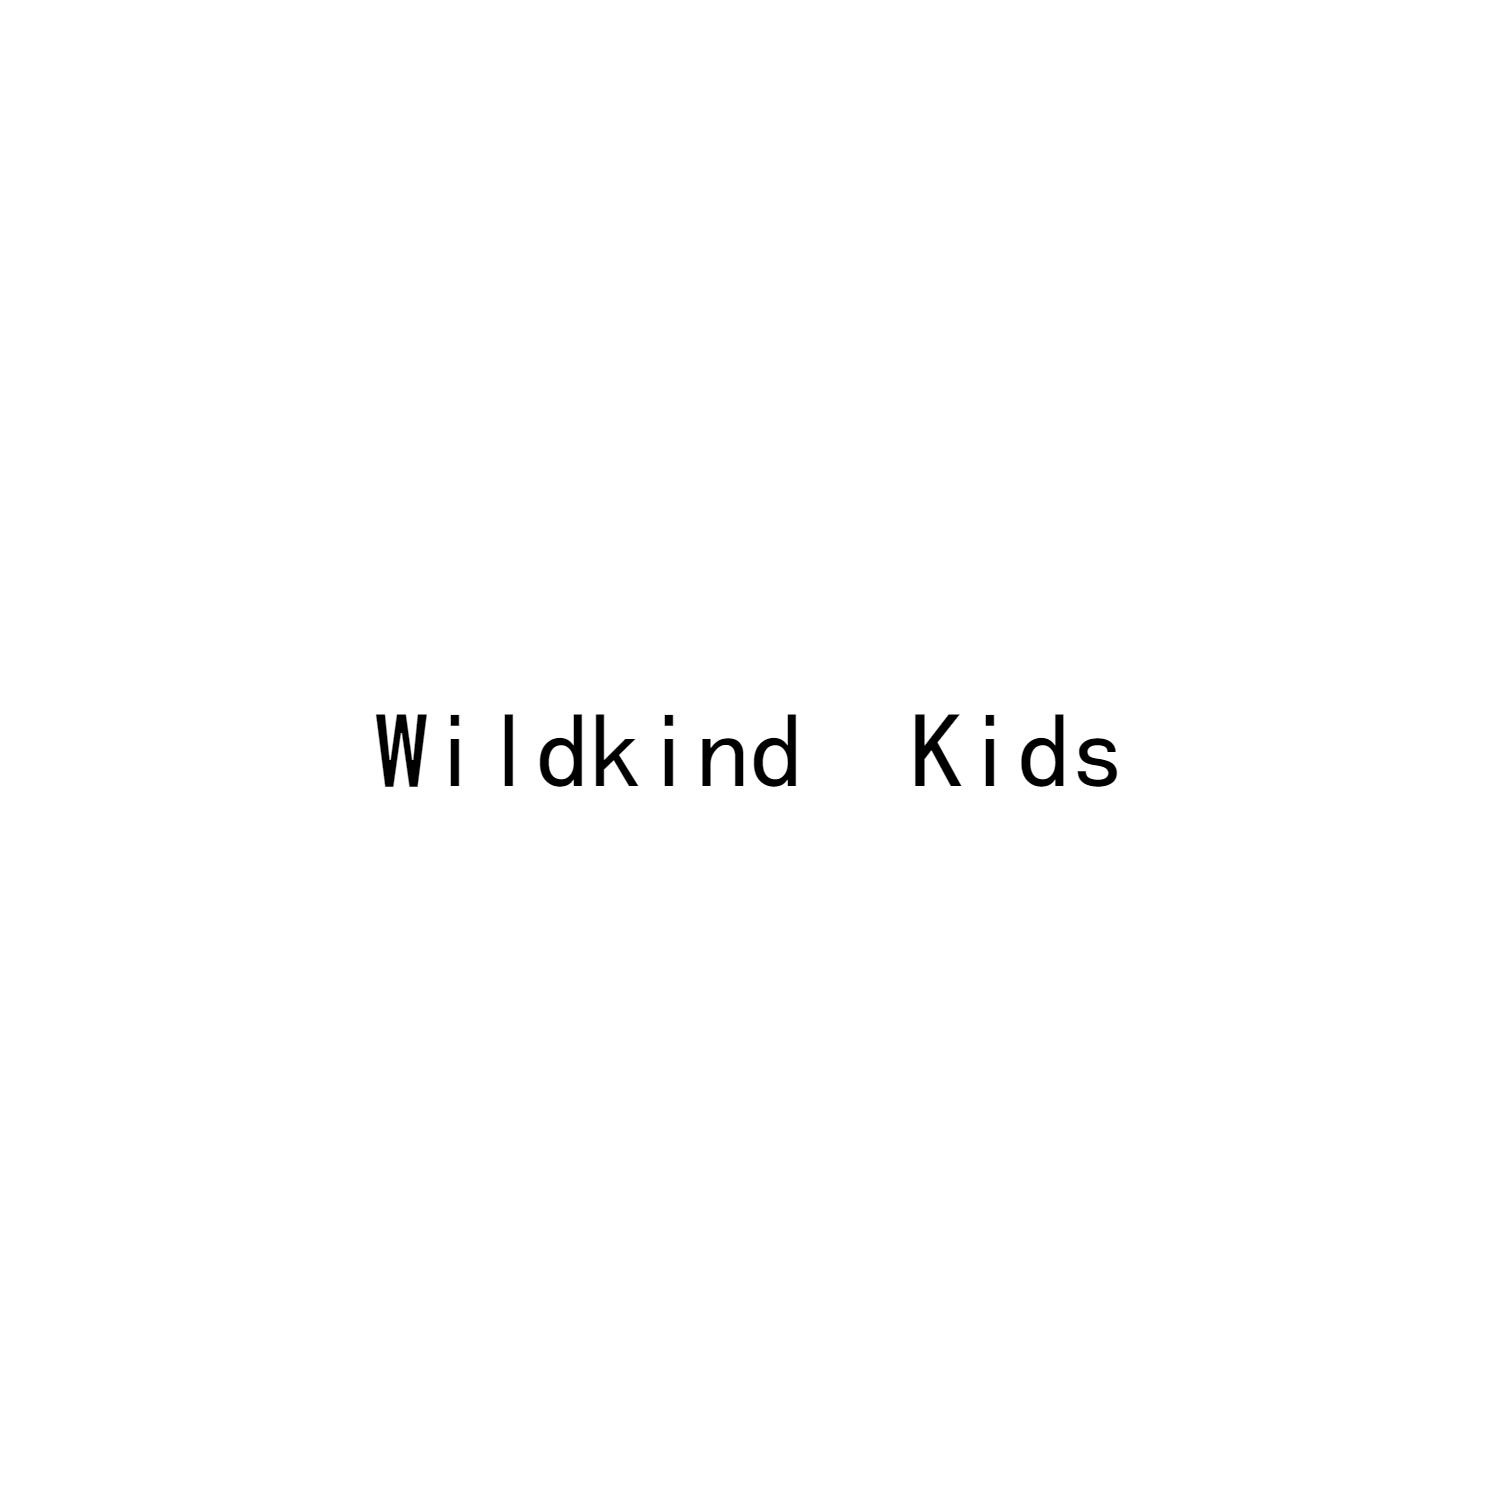 Wildkind Kids